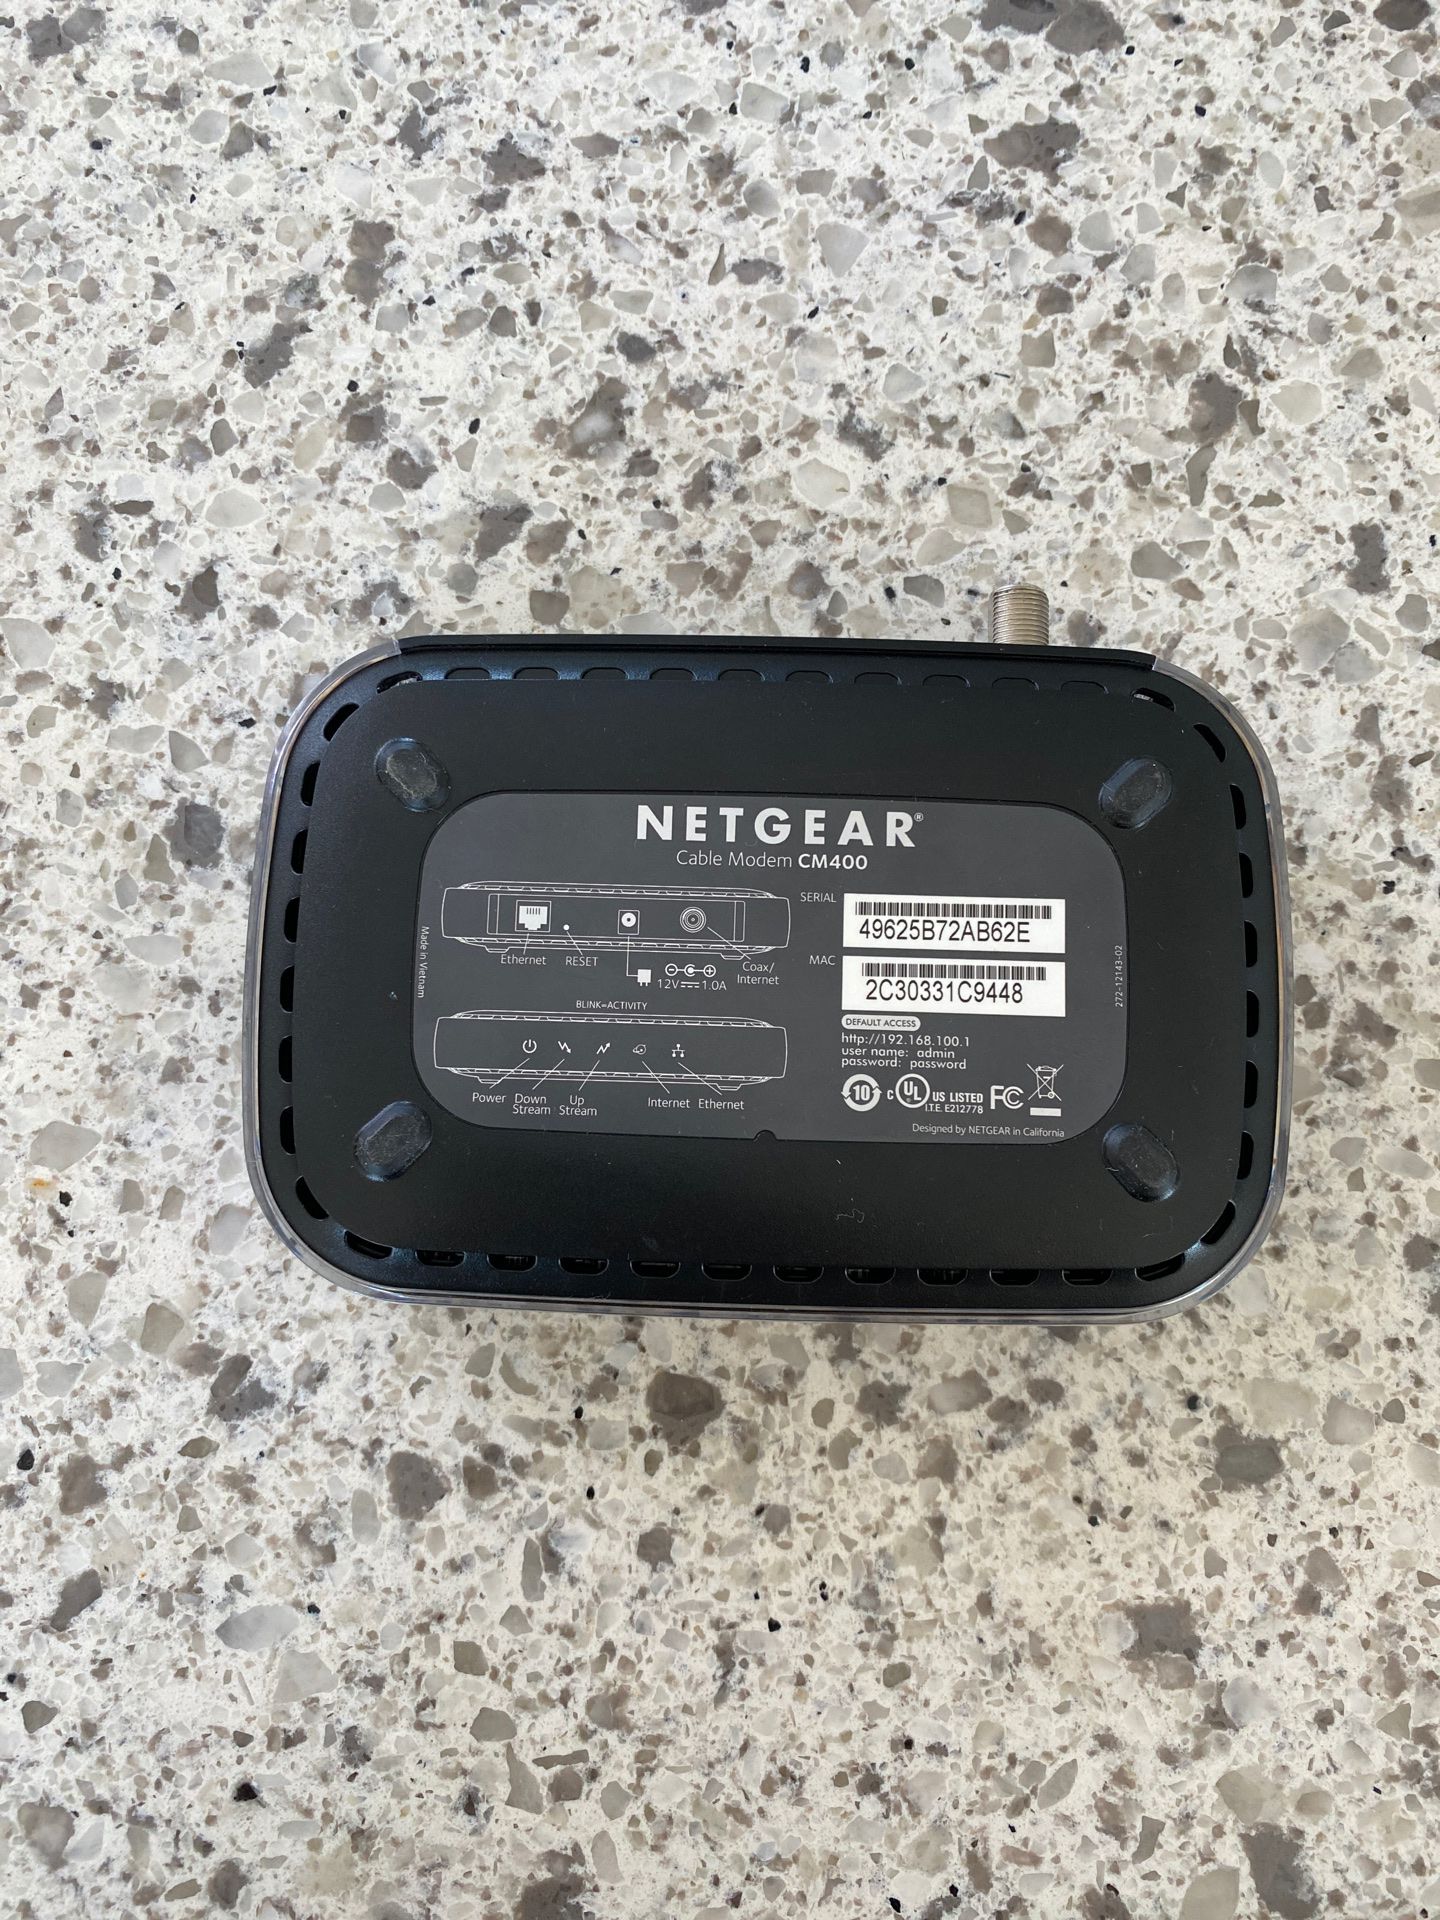 NETGEAR cable modem cm400